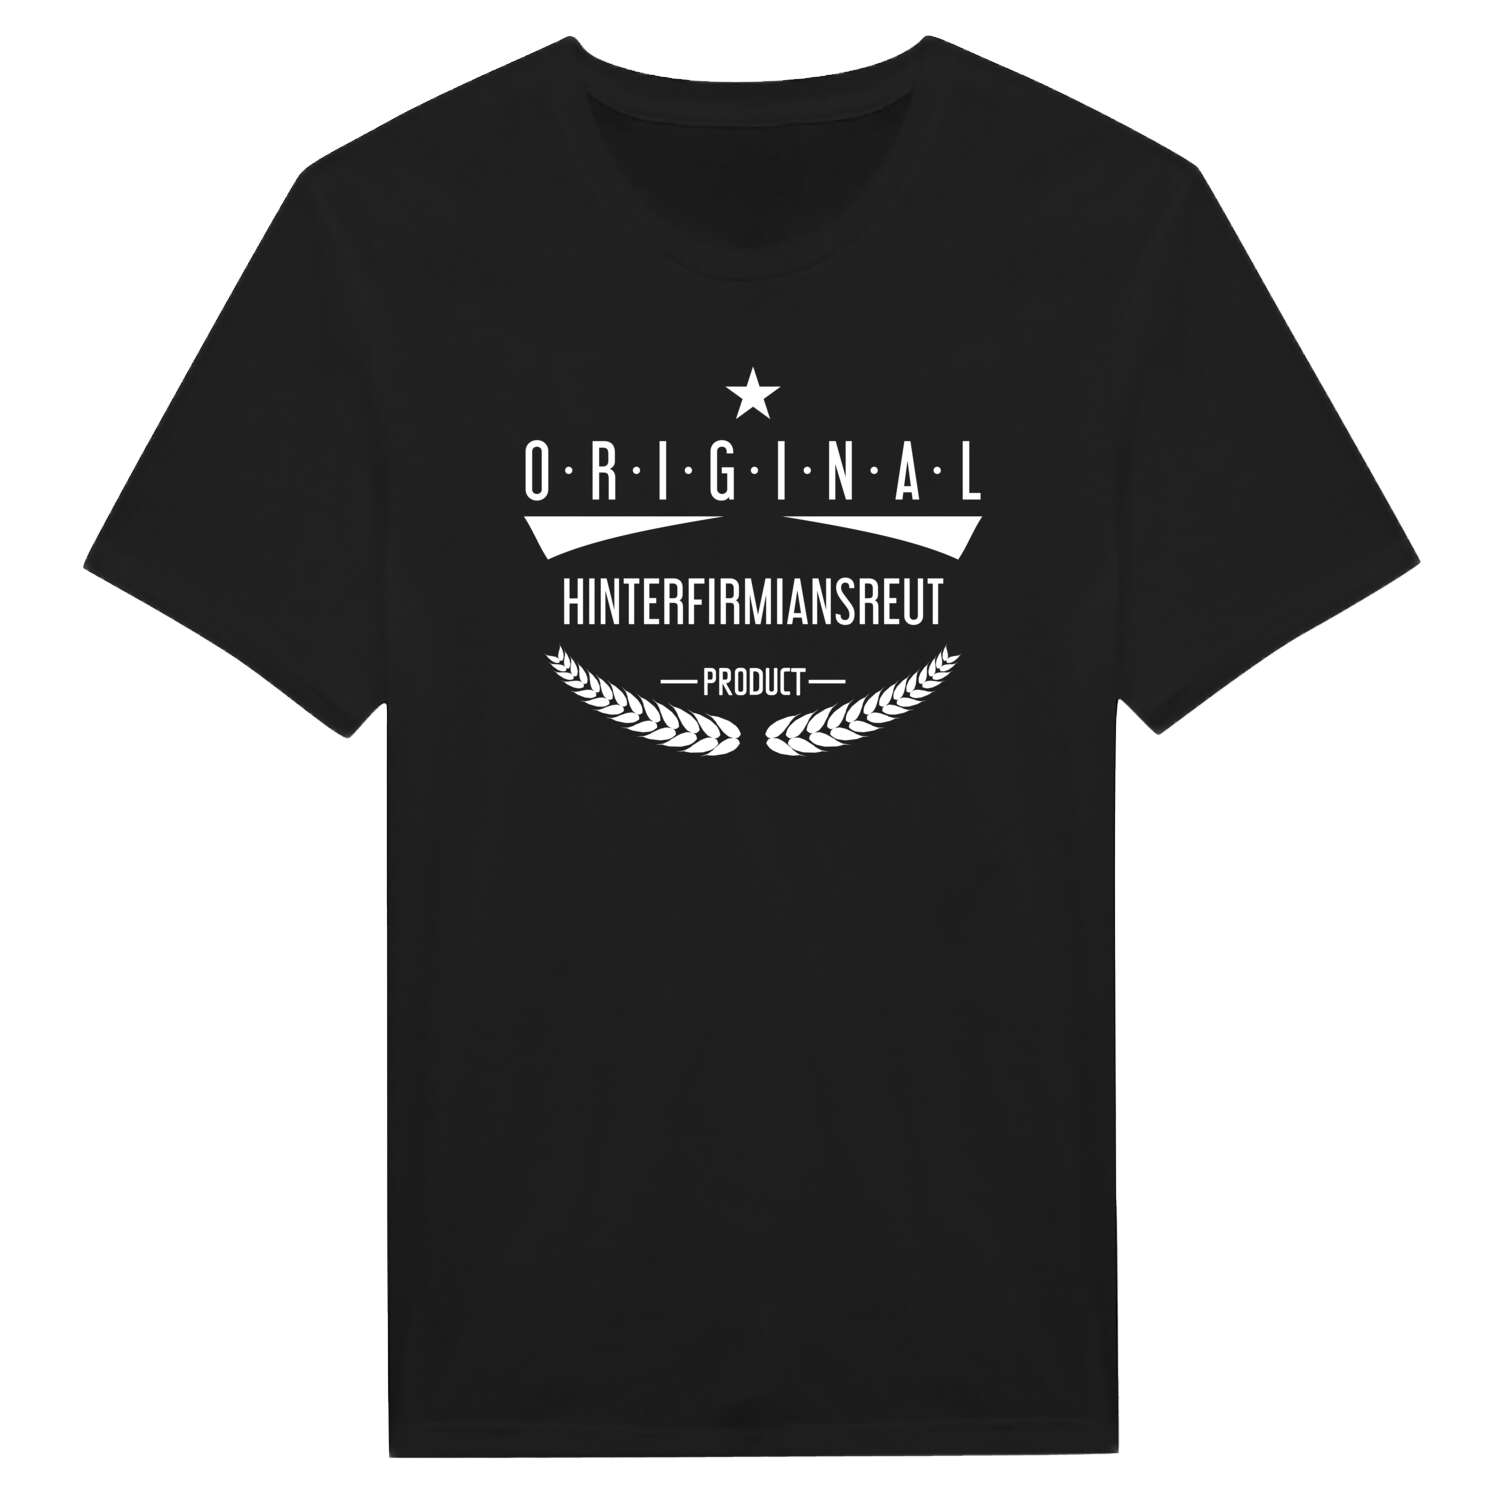 Hinterfirmiansreut T-Shirt »Original Product«